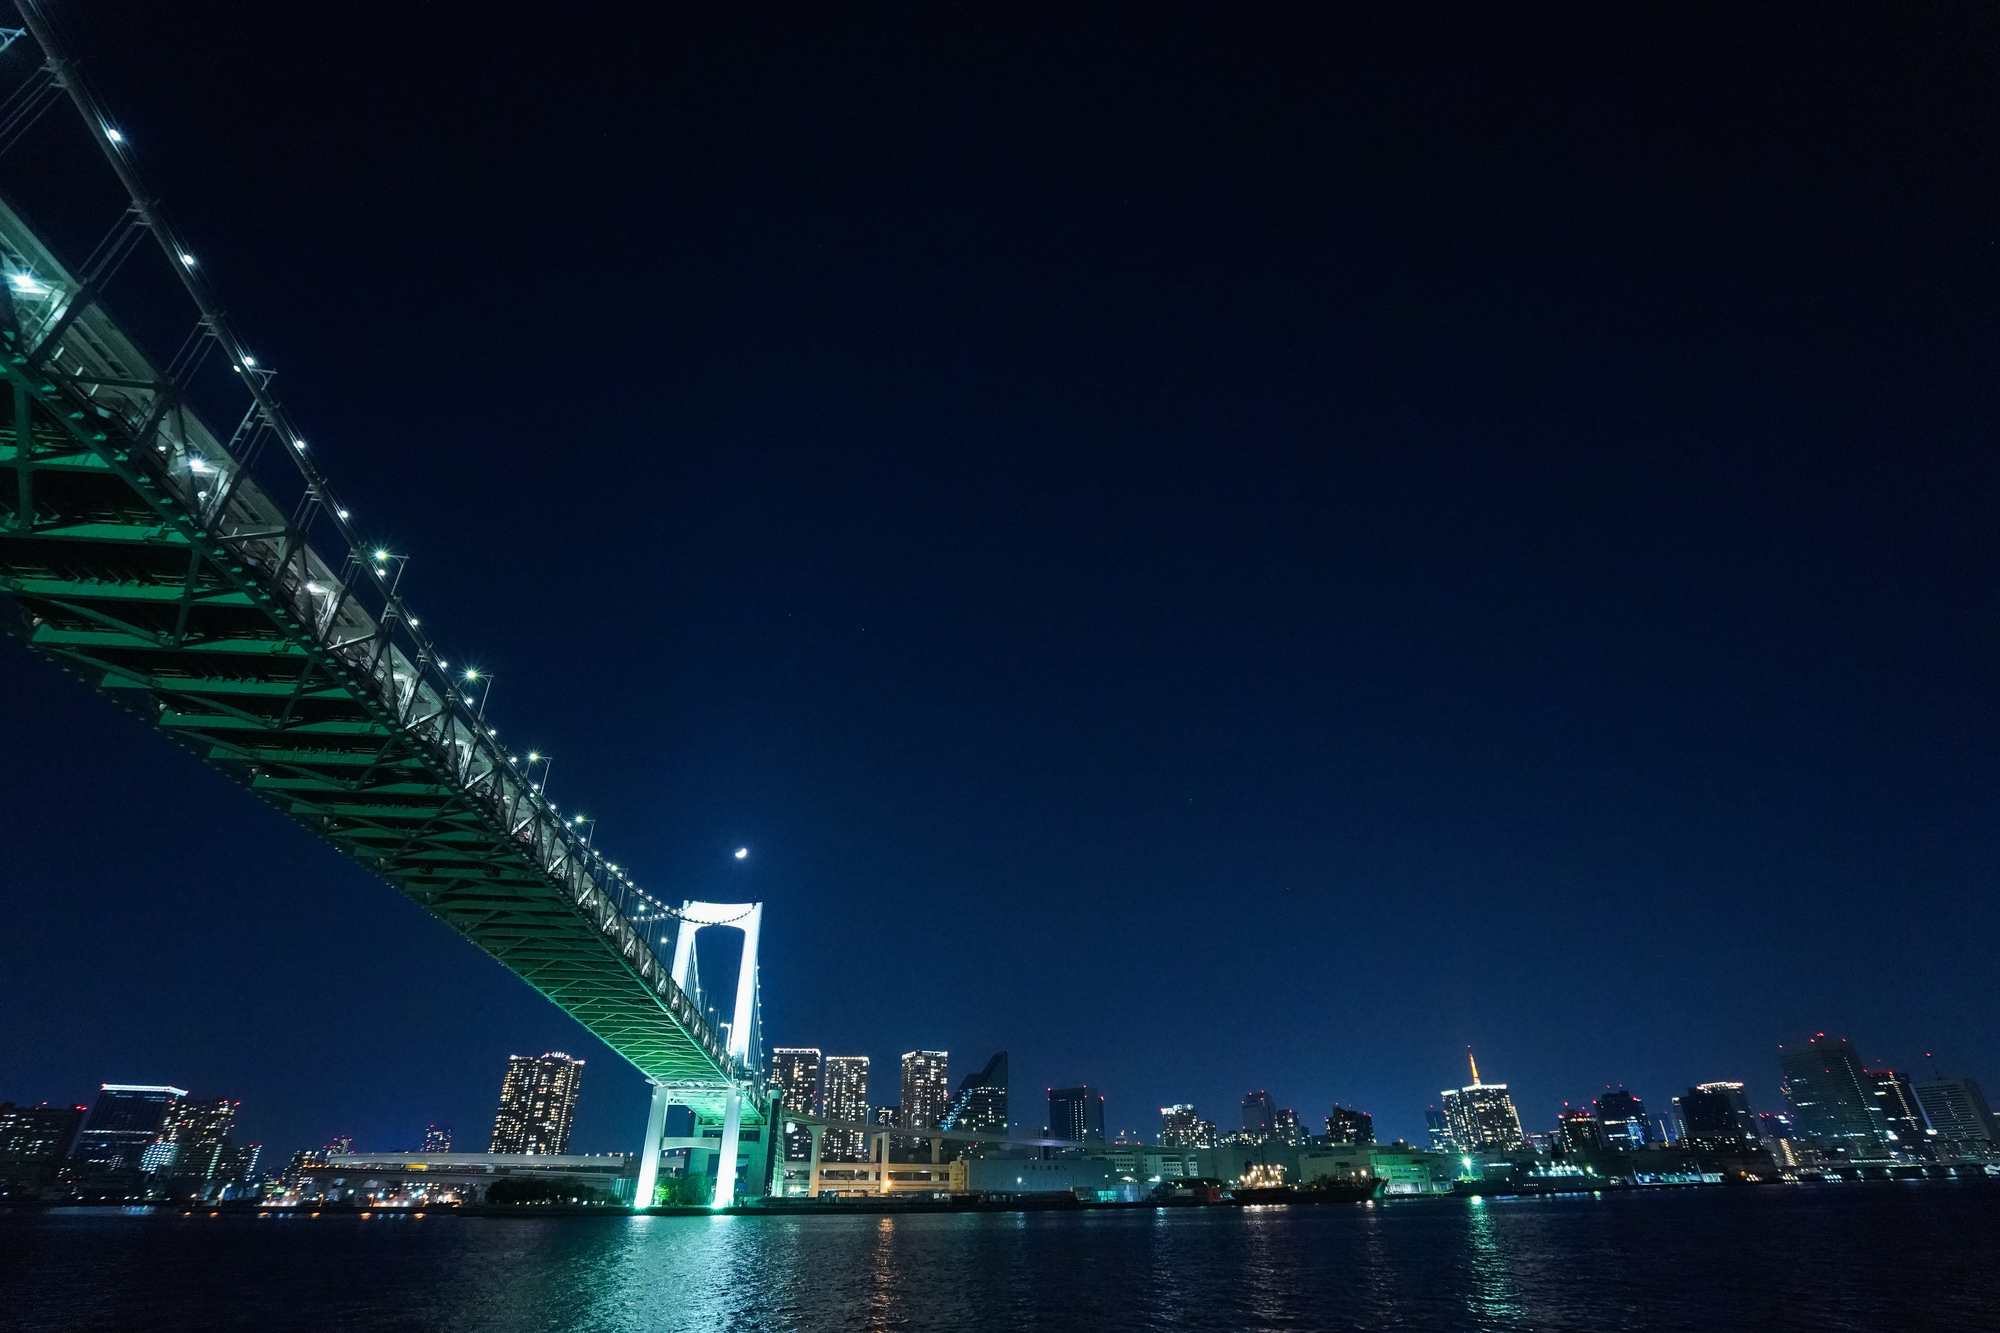 船から見る美しい夜景とライトアップされた橋